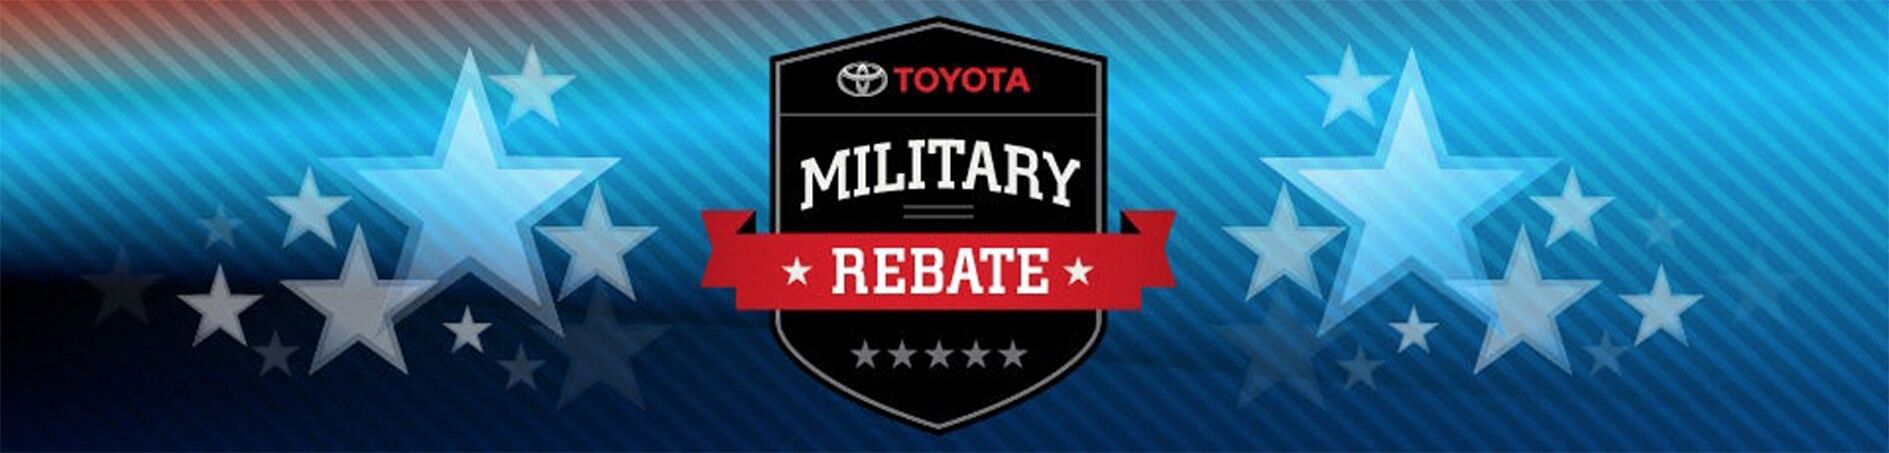 Military Rebate logo